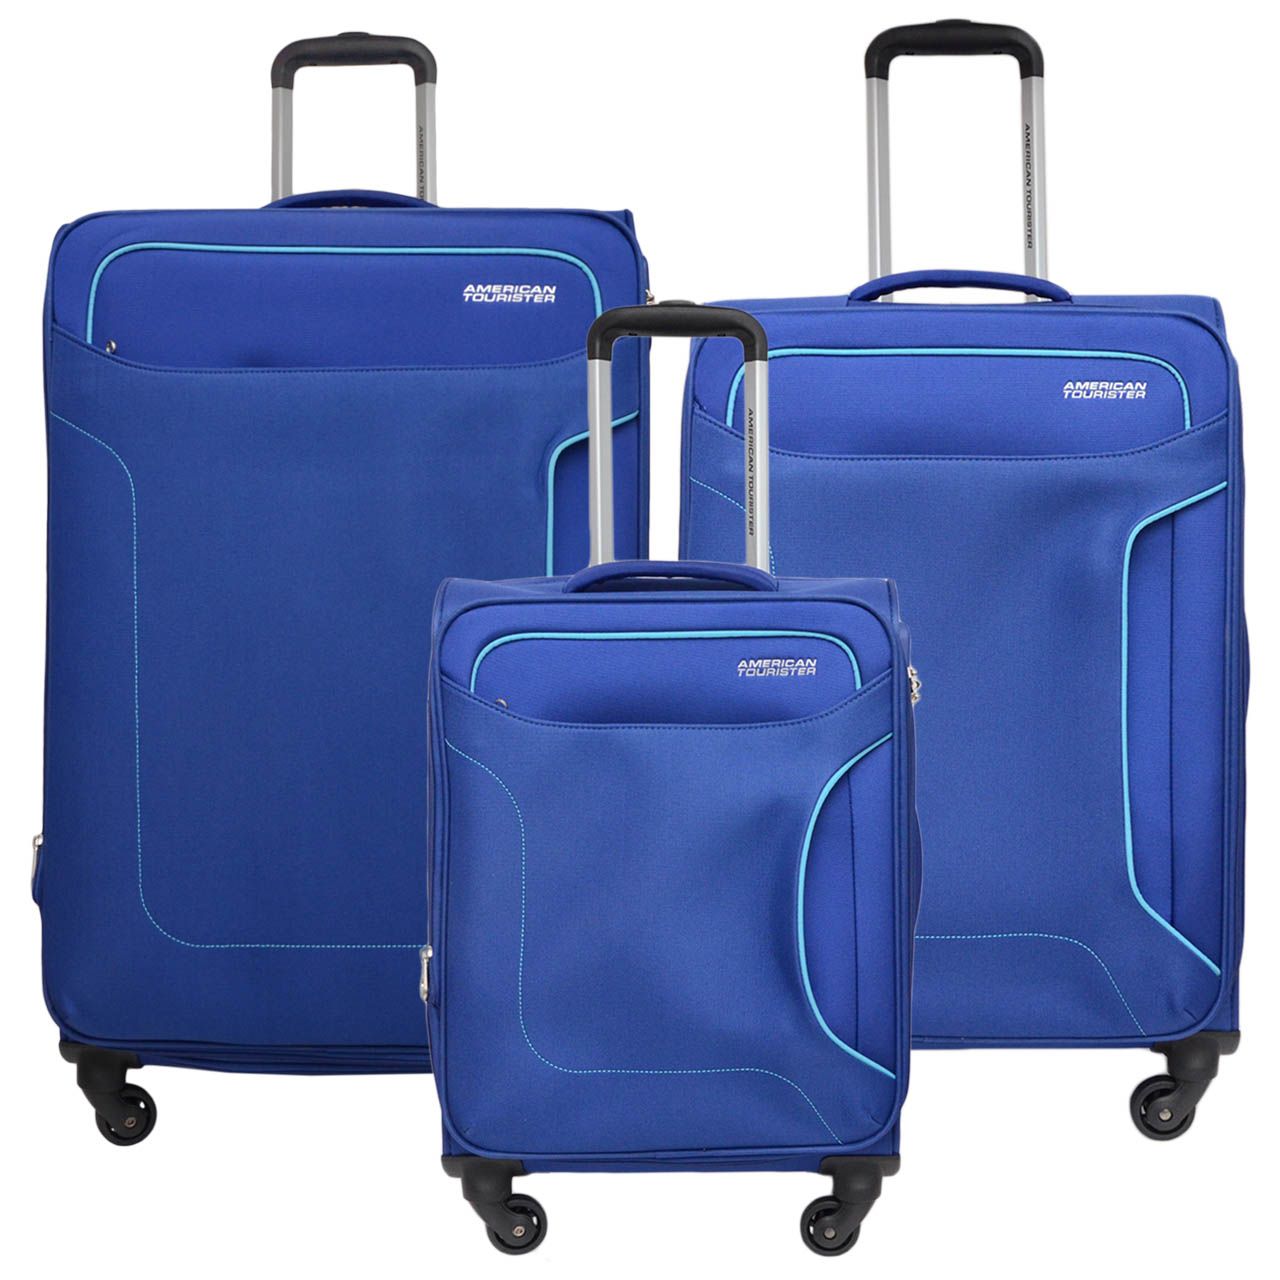 مجموعه سه عددی چمدان امریکن توریستر مدل HOLIDAY LE4 -  - 1